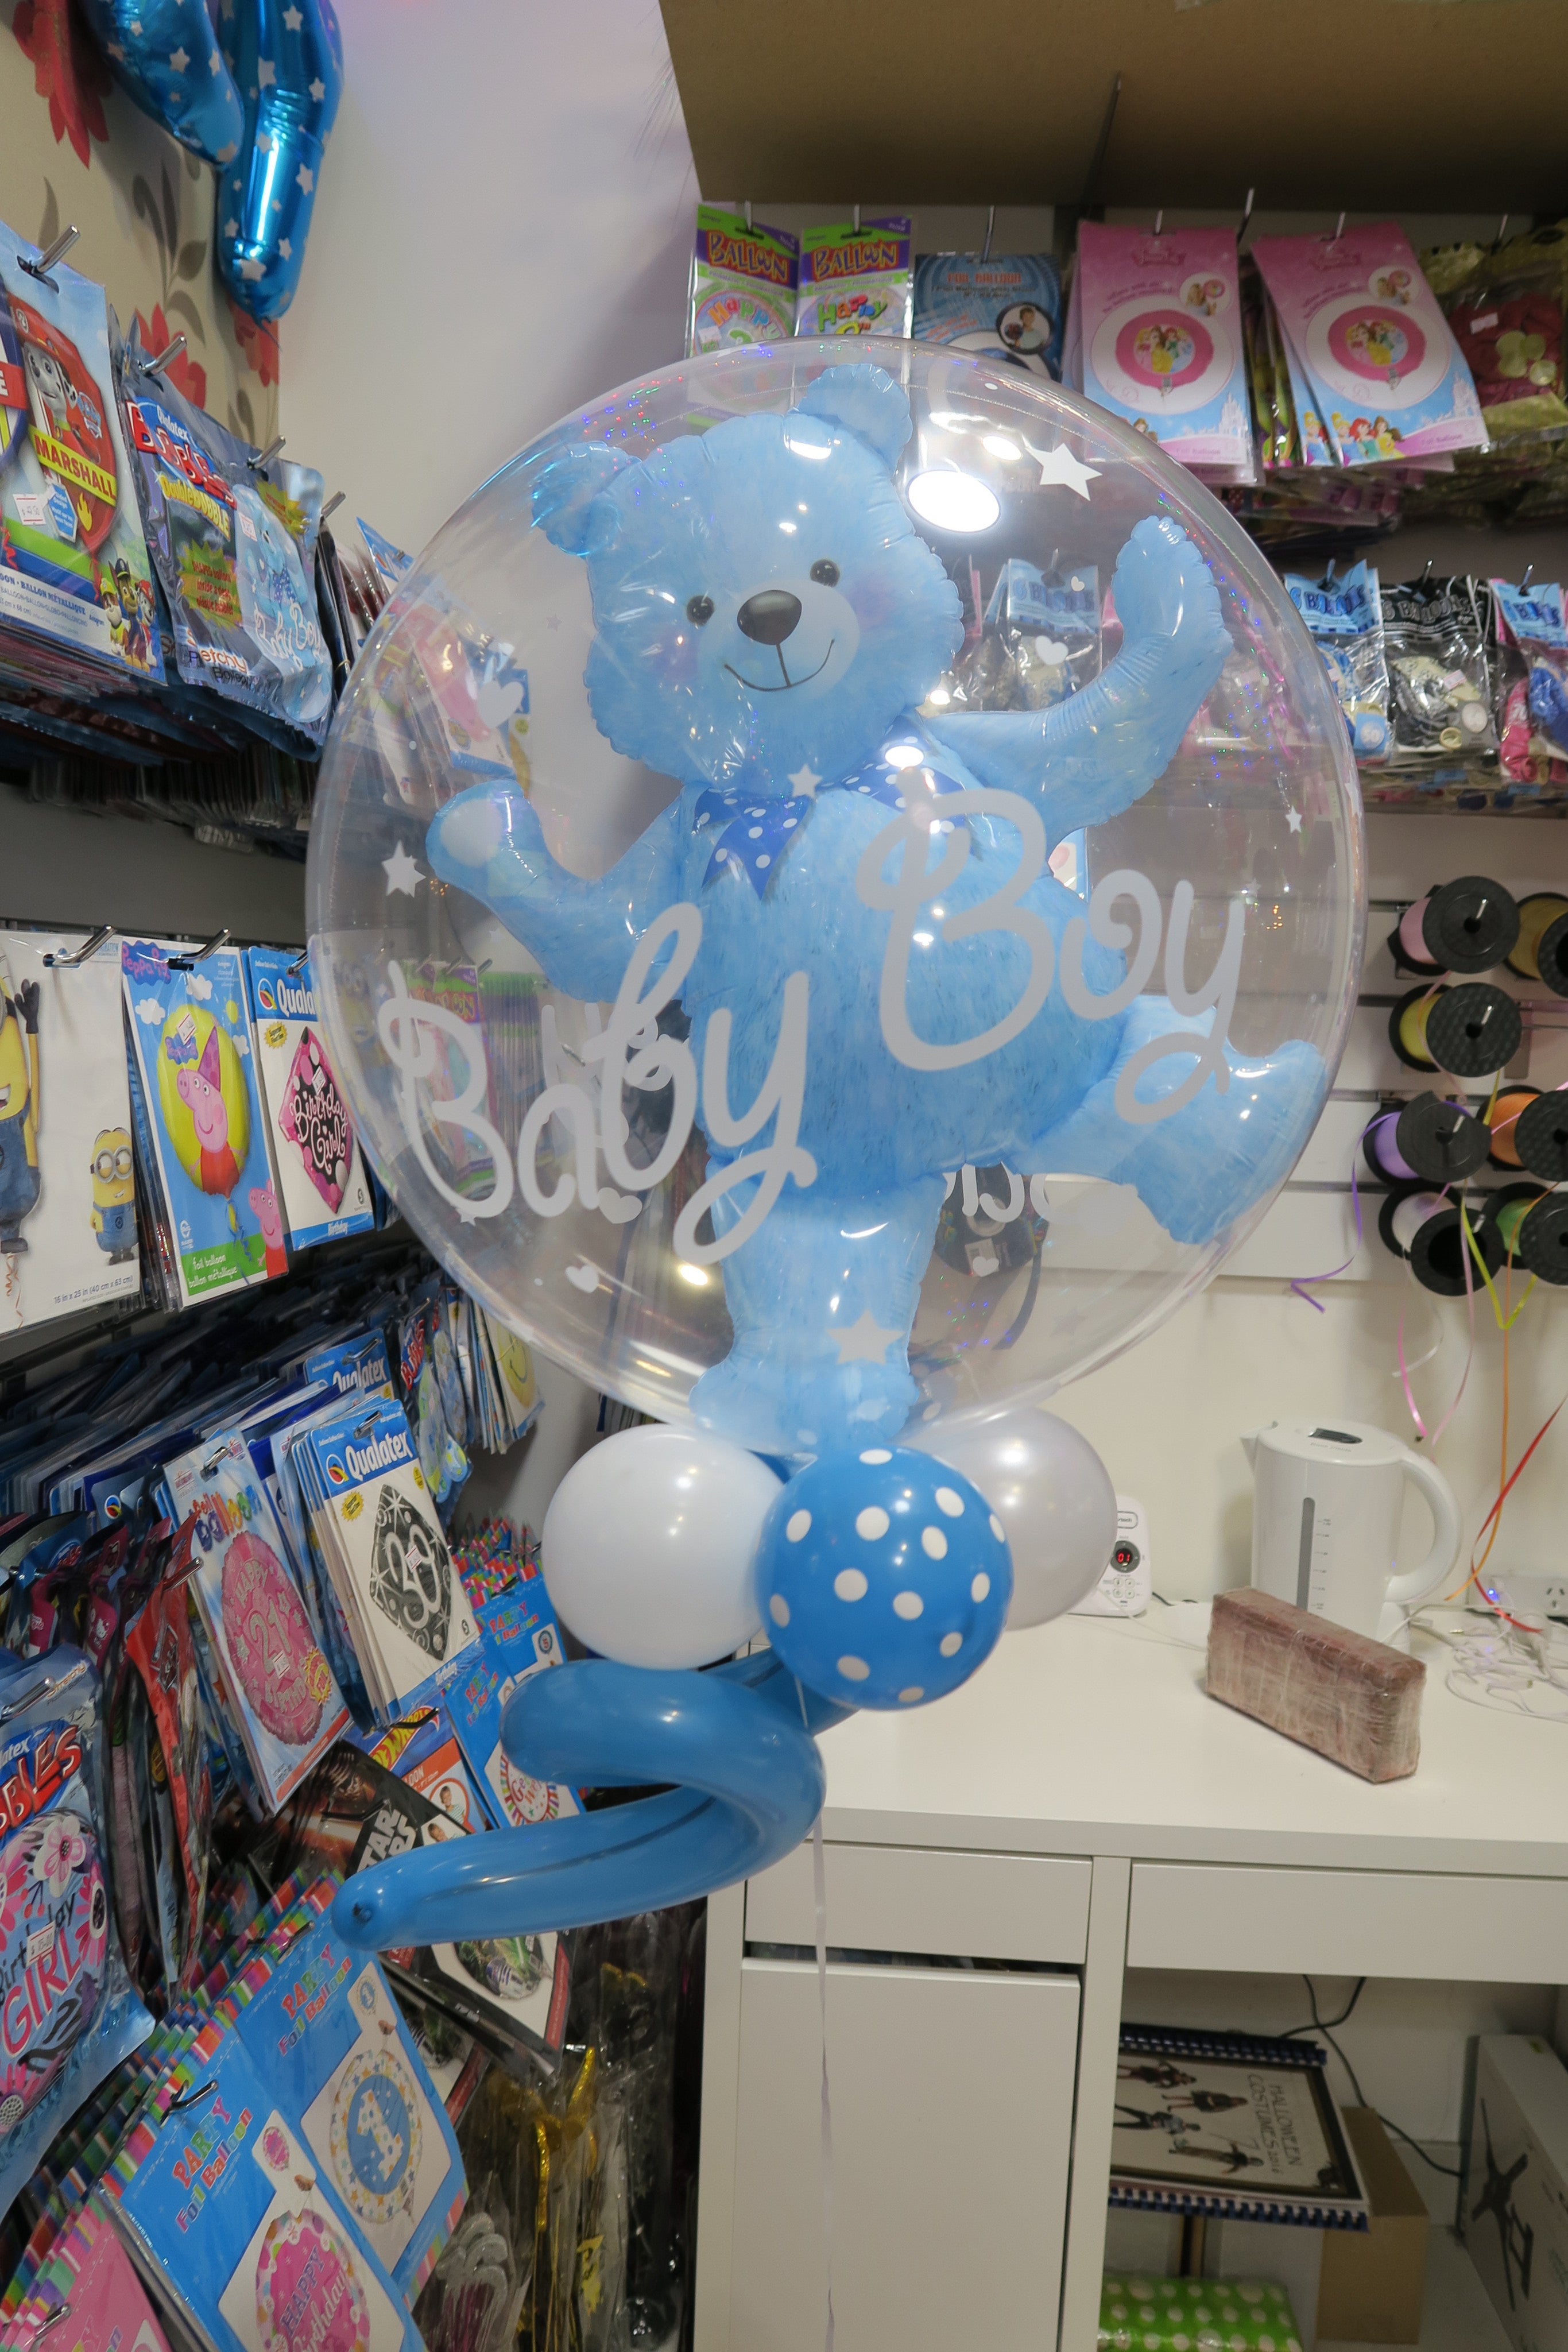 teddy bear inside a balloon